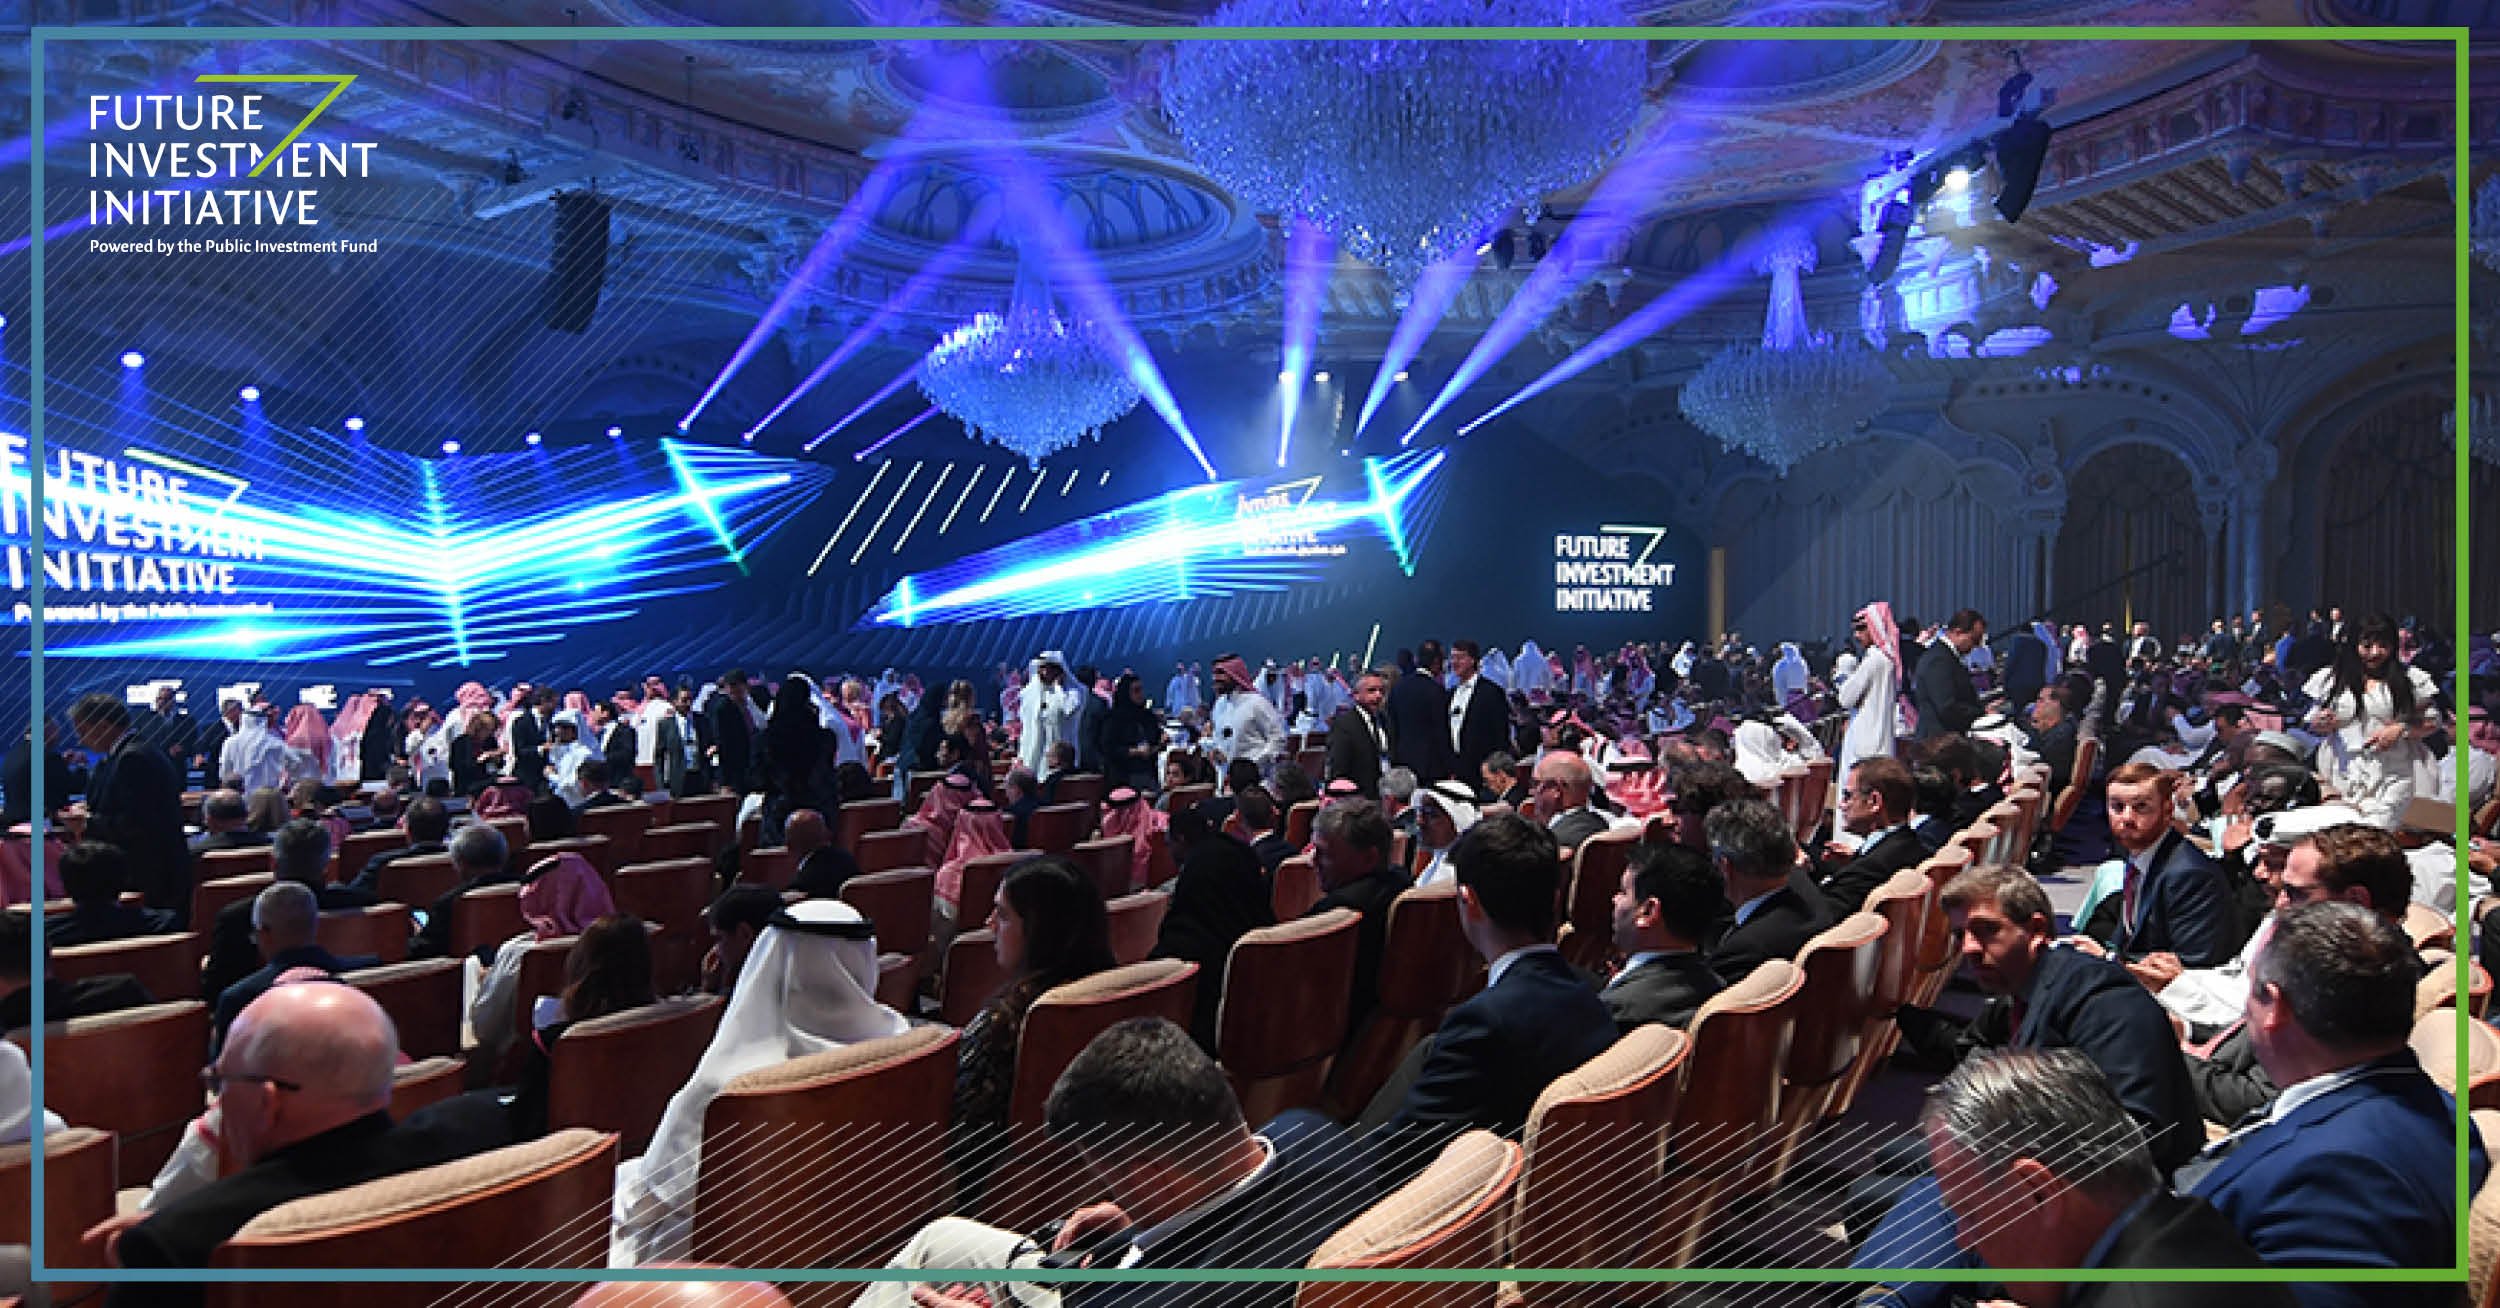 شاهد بالصور.. لقطات من انطلاق مبادرة مستقبل الاستثمار في الرياض